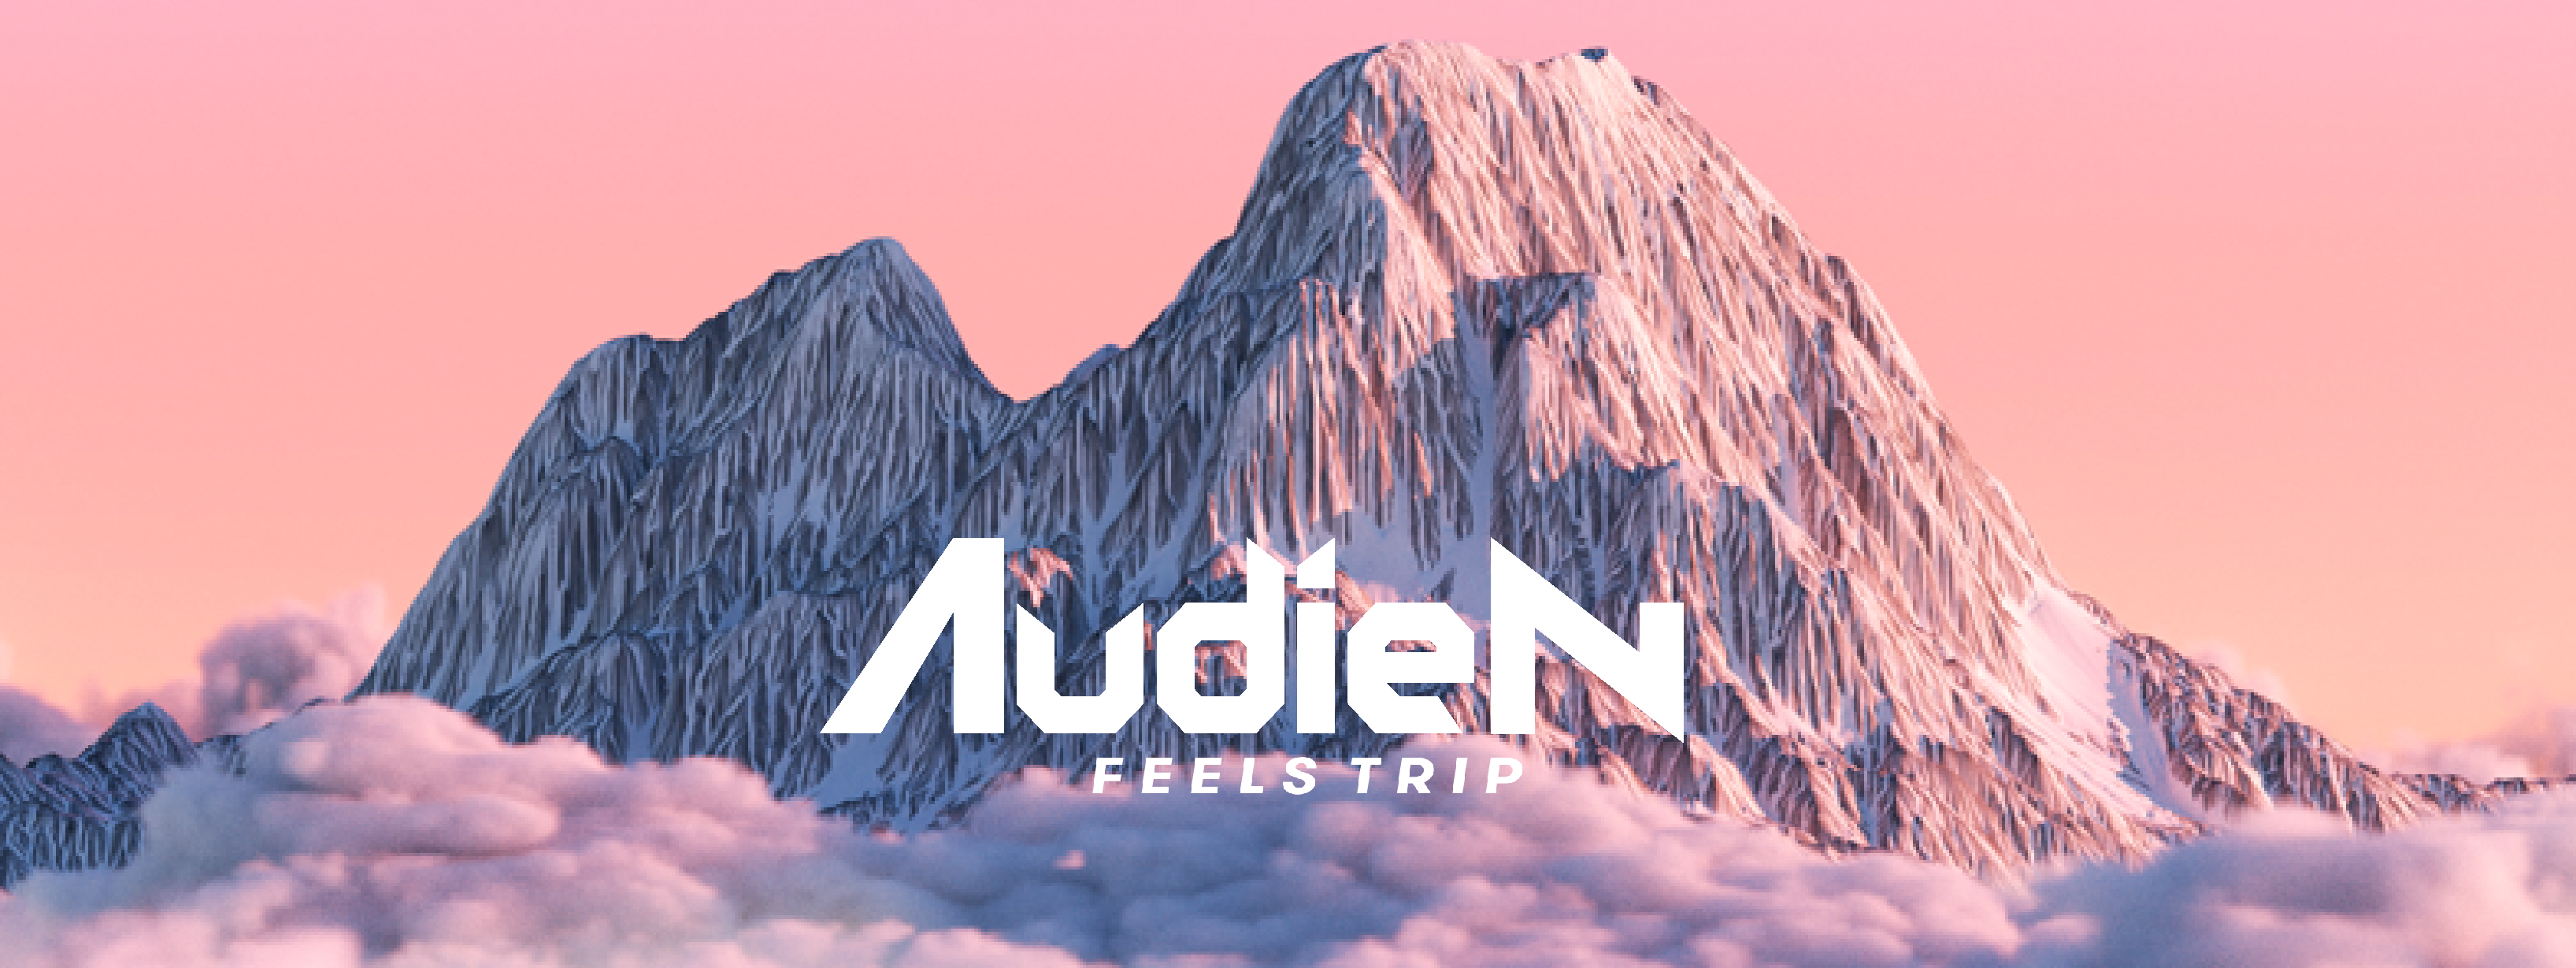 Audien Feels Trip Tour